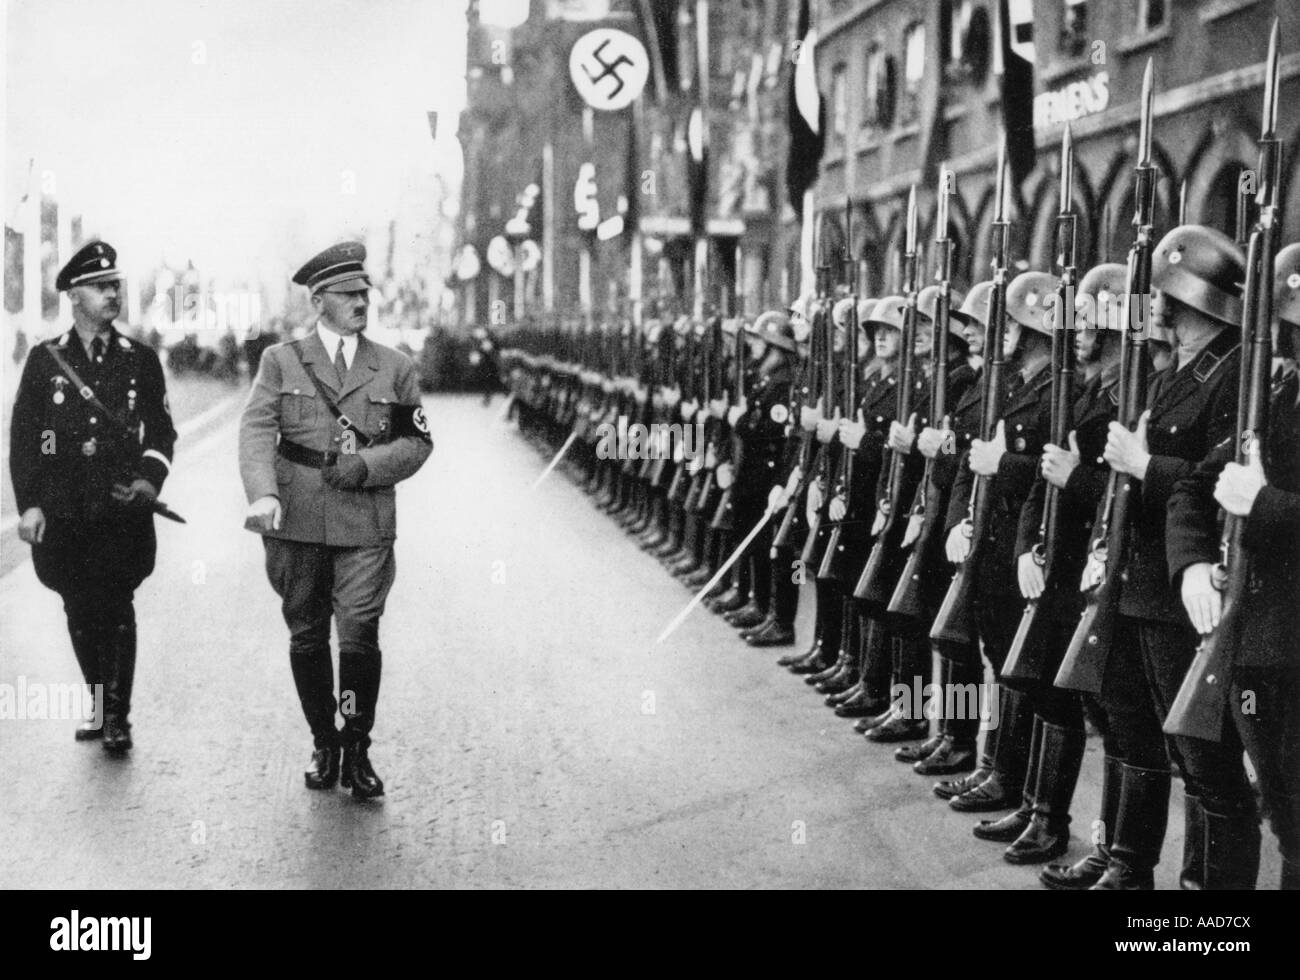 9 1935 9 10 A1 6 D Hitler Leibstandarte Reichsparteitag 7 Reichsparteitag der NSDAP Partei Tag der Freiheit en Nuernberg 10 bis Foto de stock